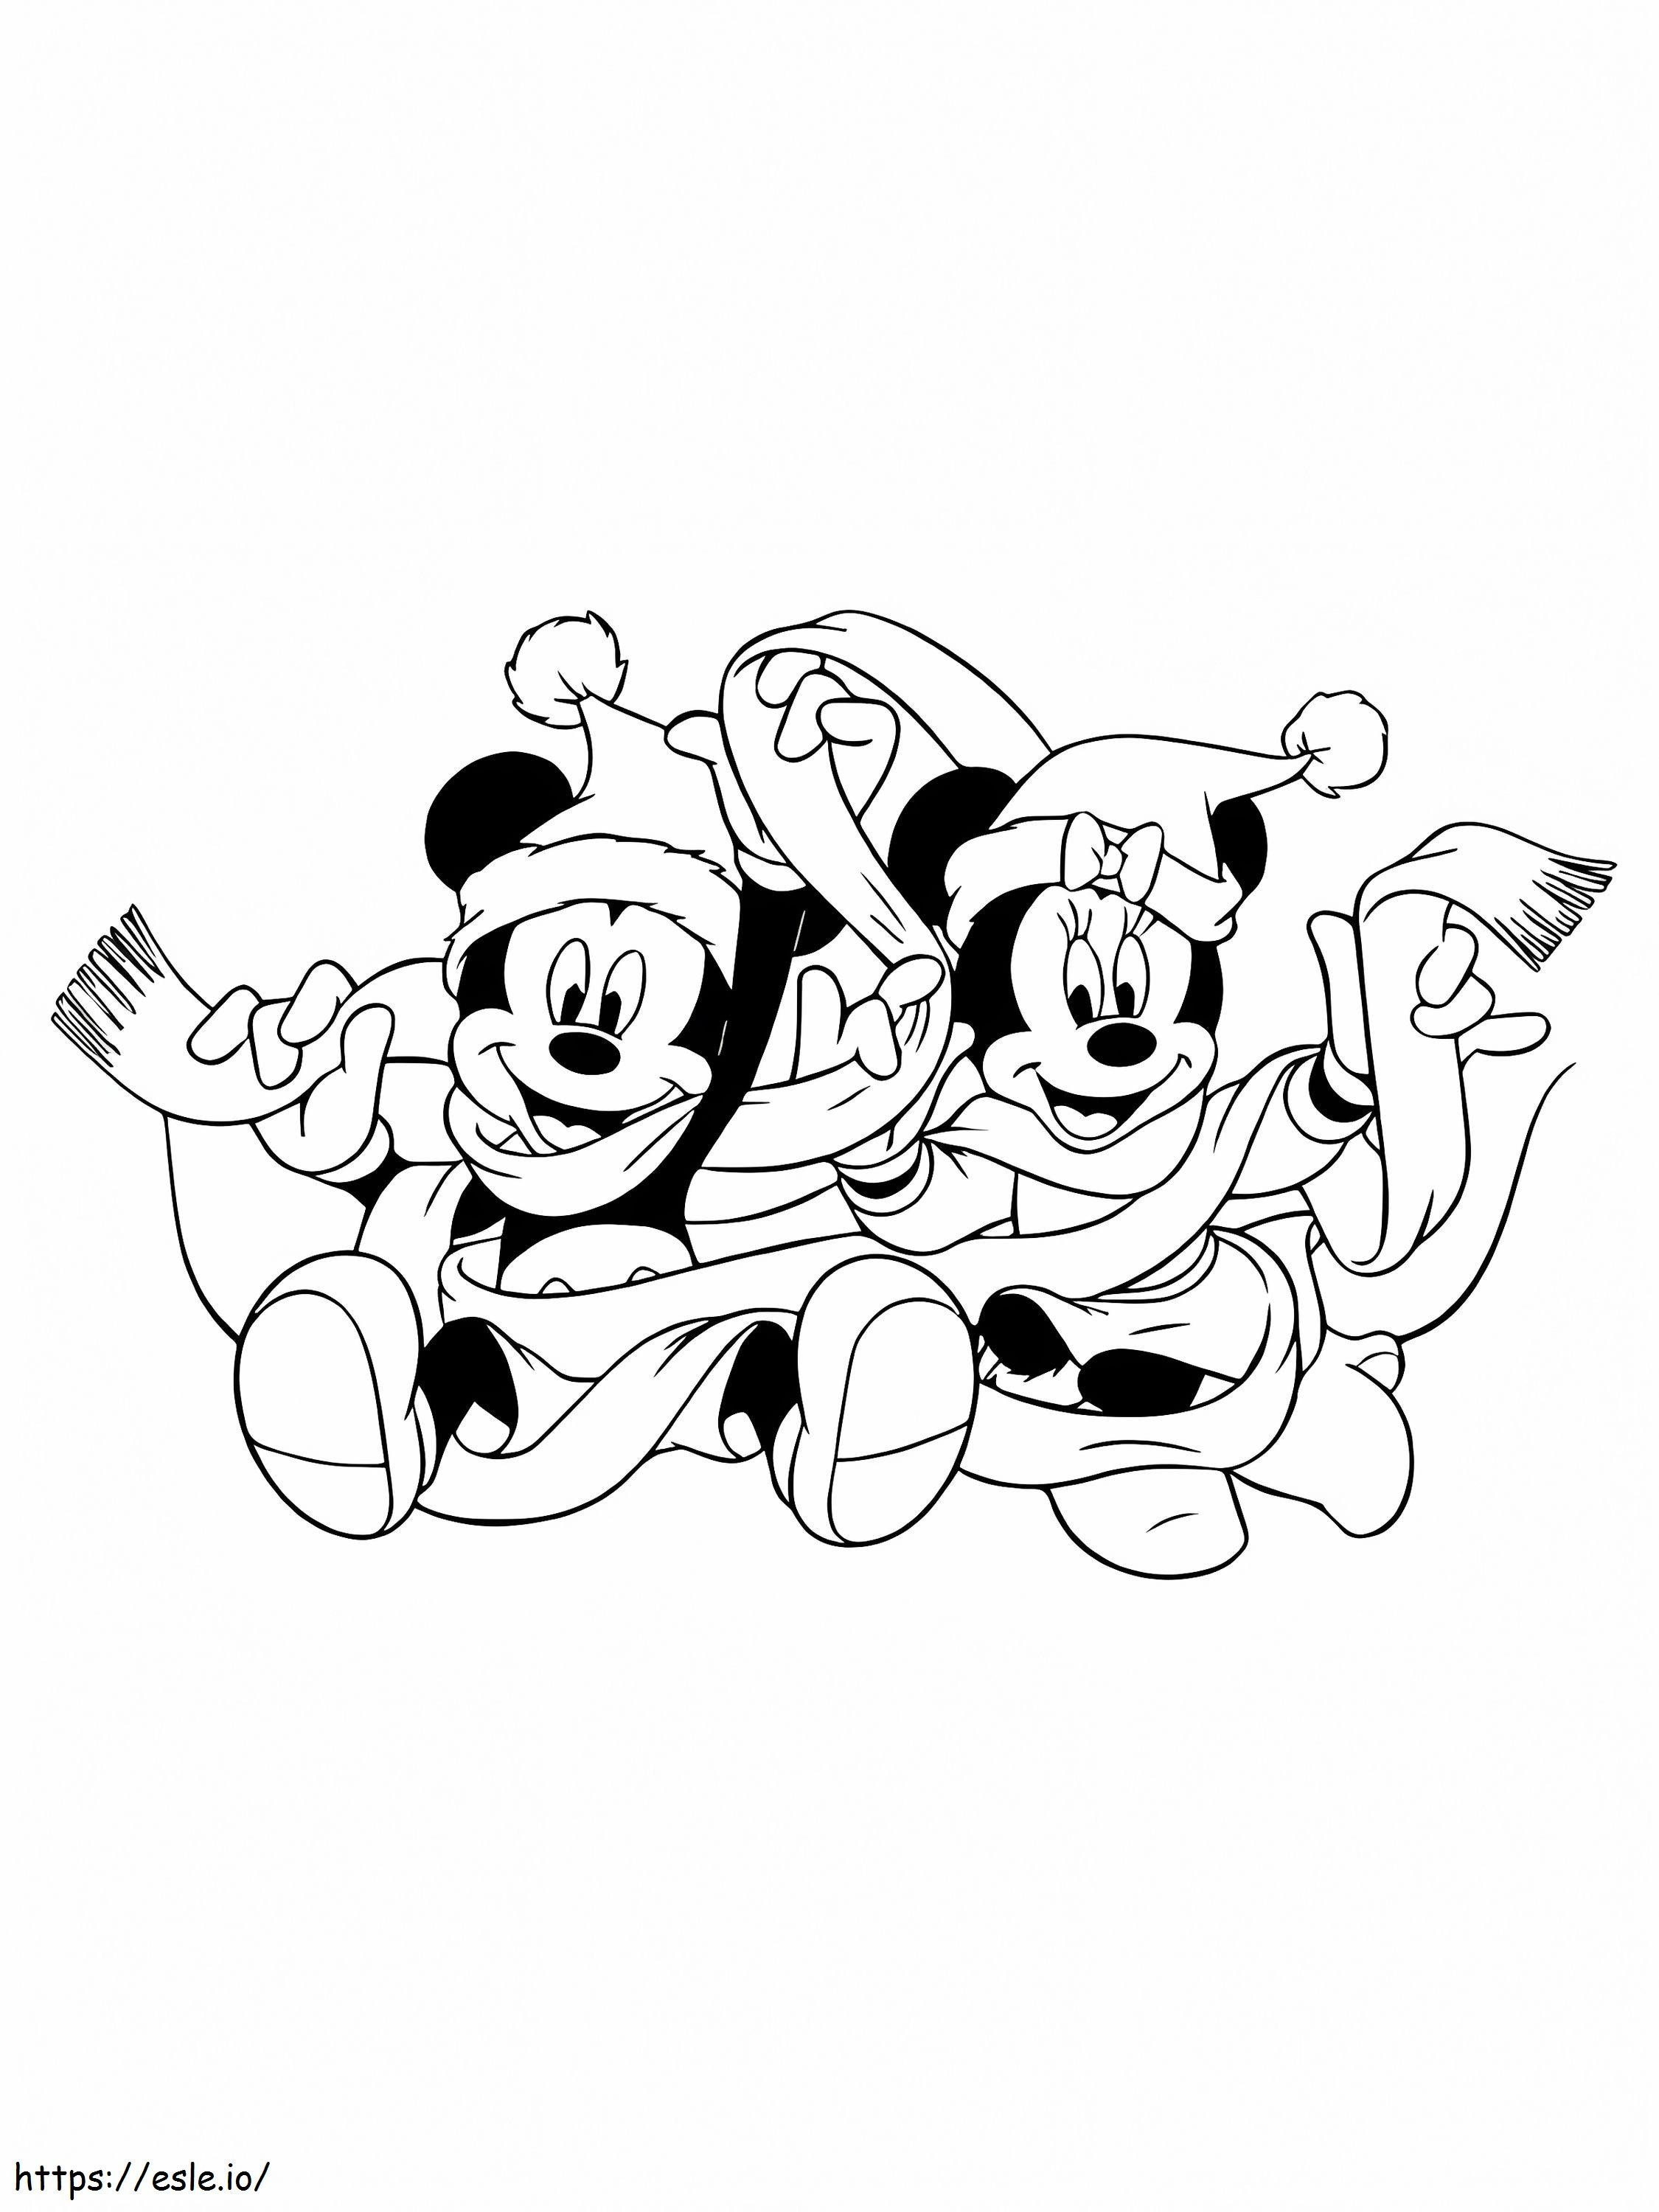 Malvorlage Weihnachten mit Mickey und Minnie ausmalbilder